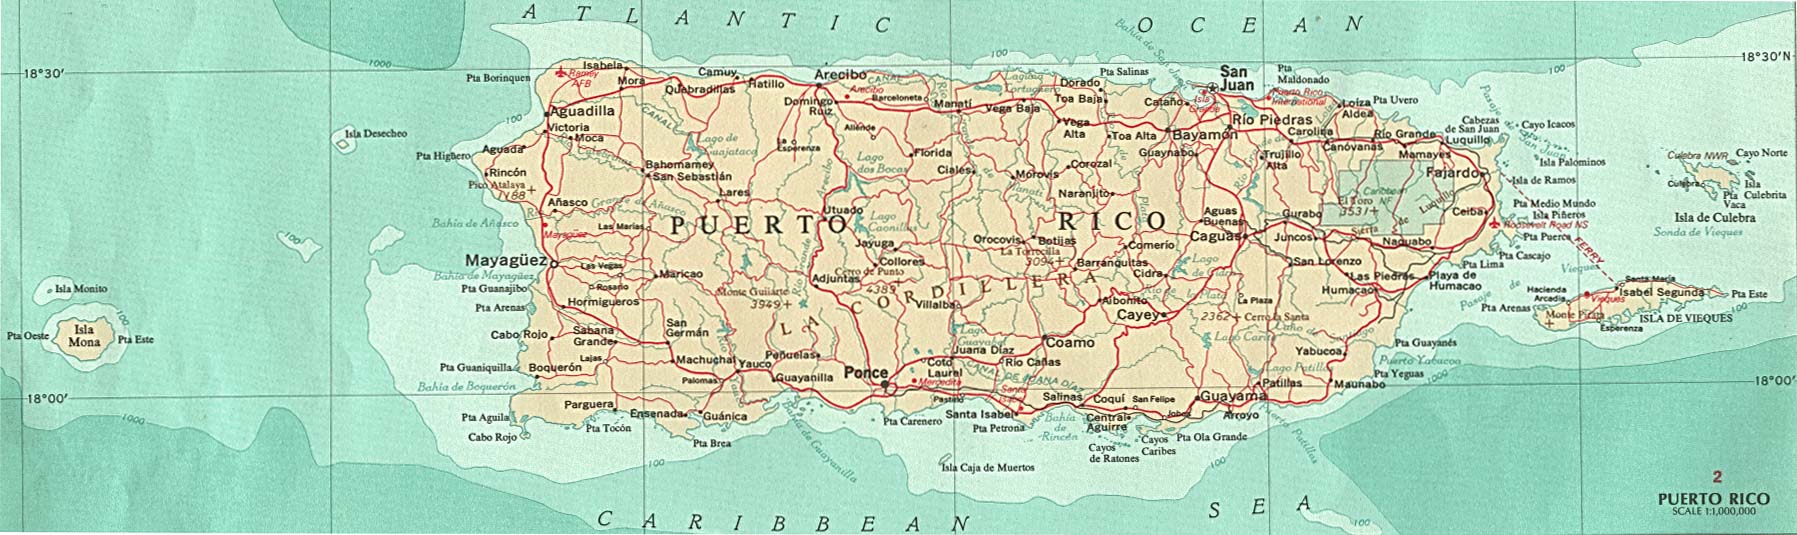 porto Rico carte 1970